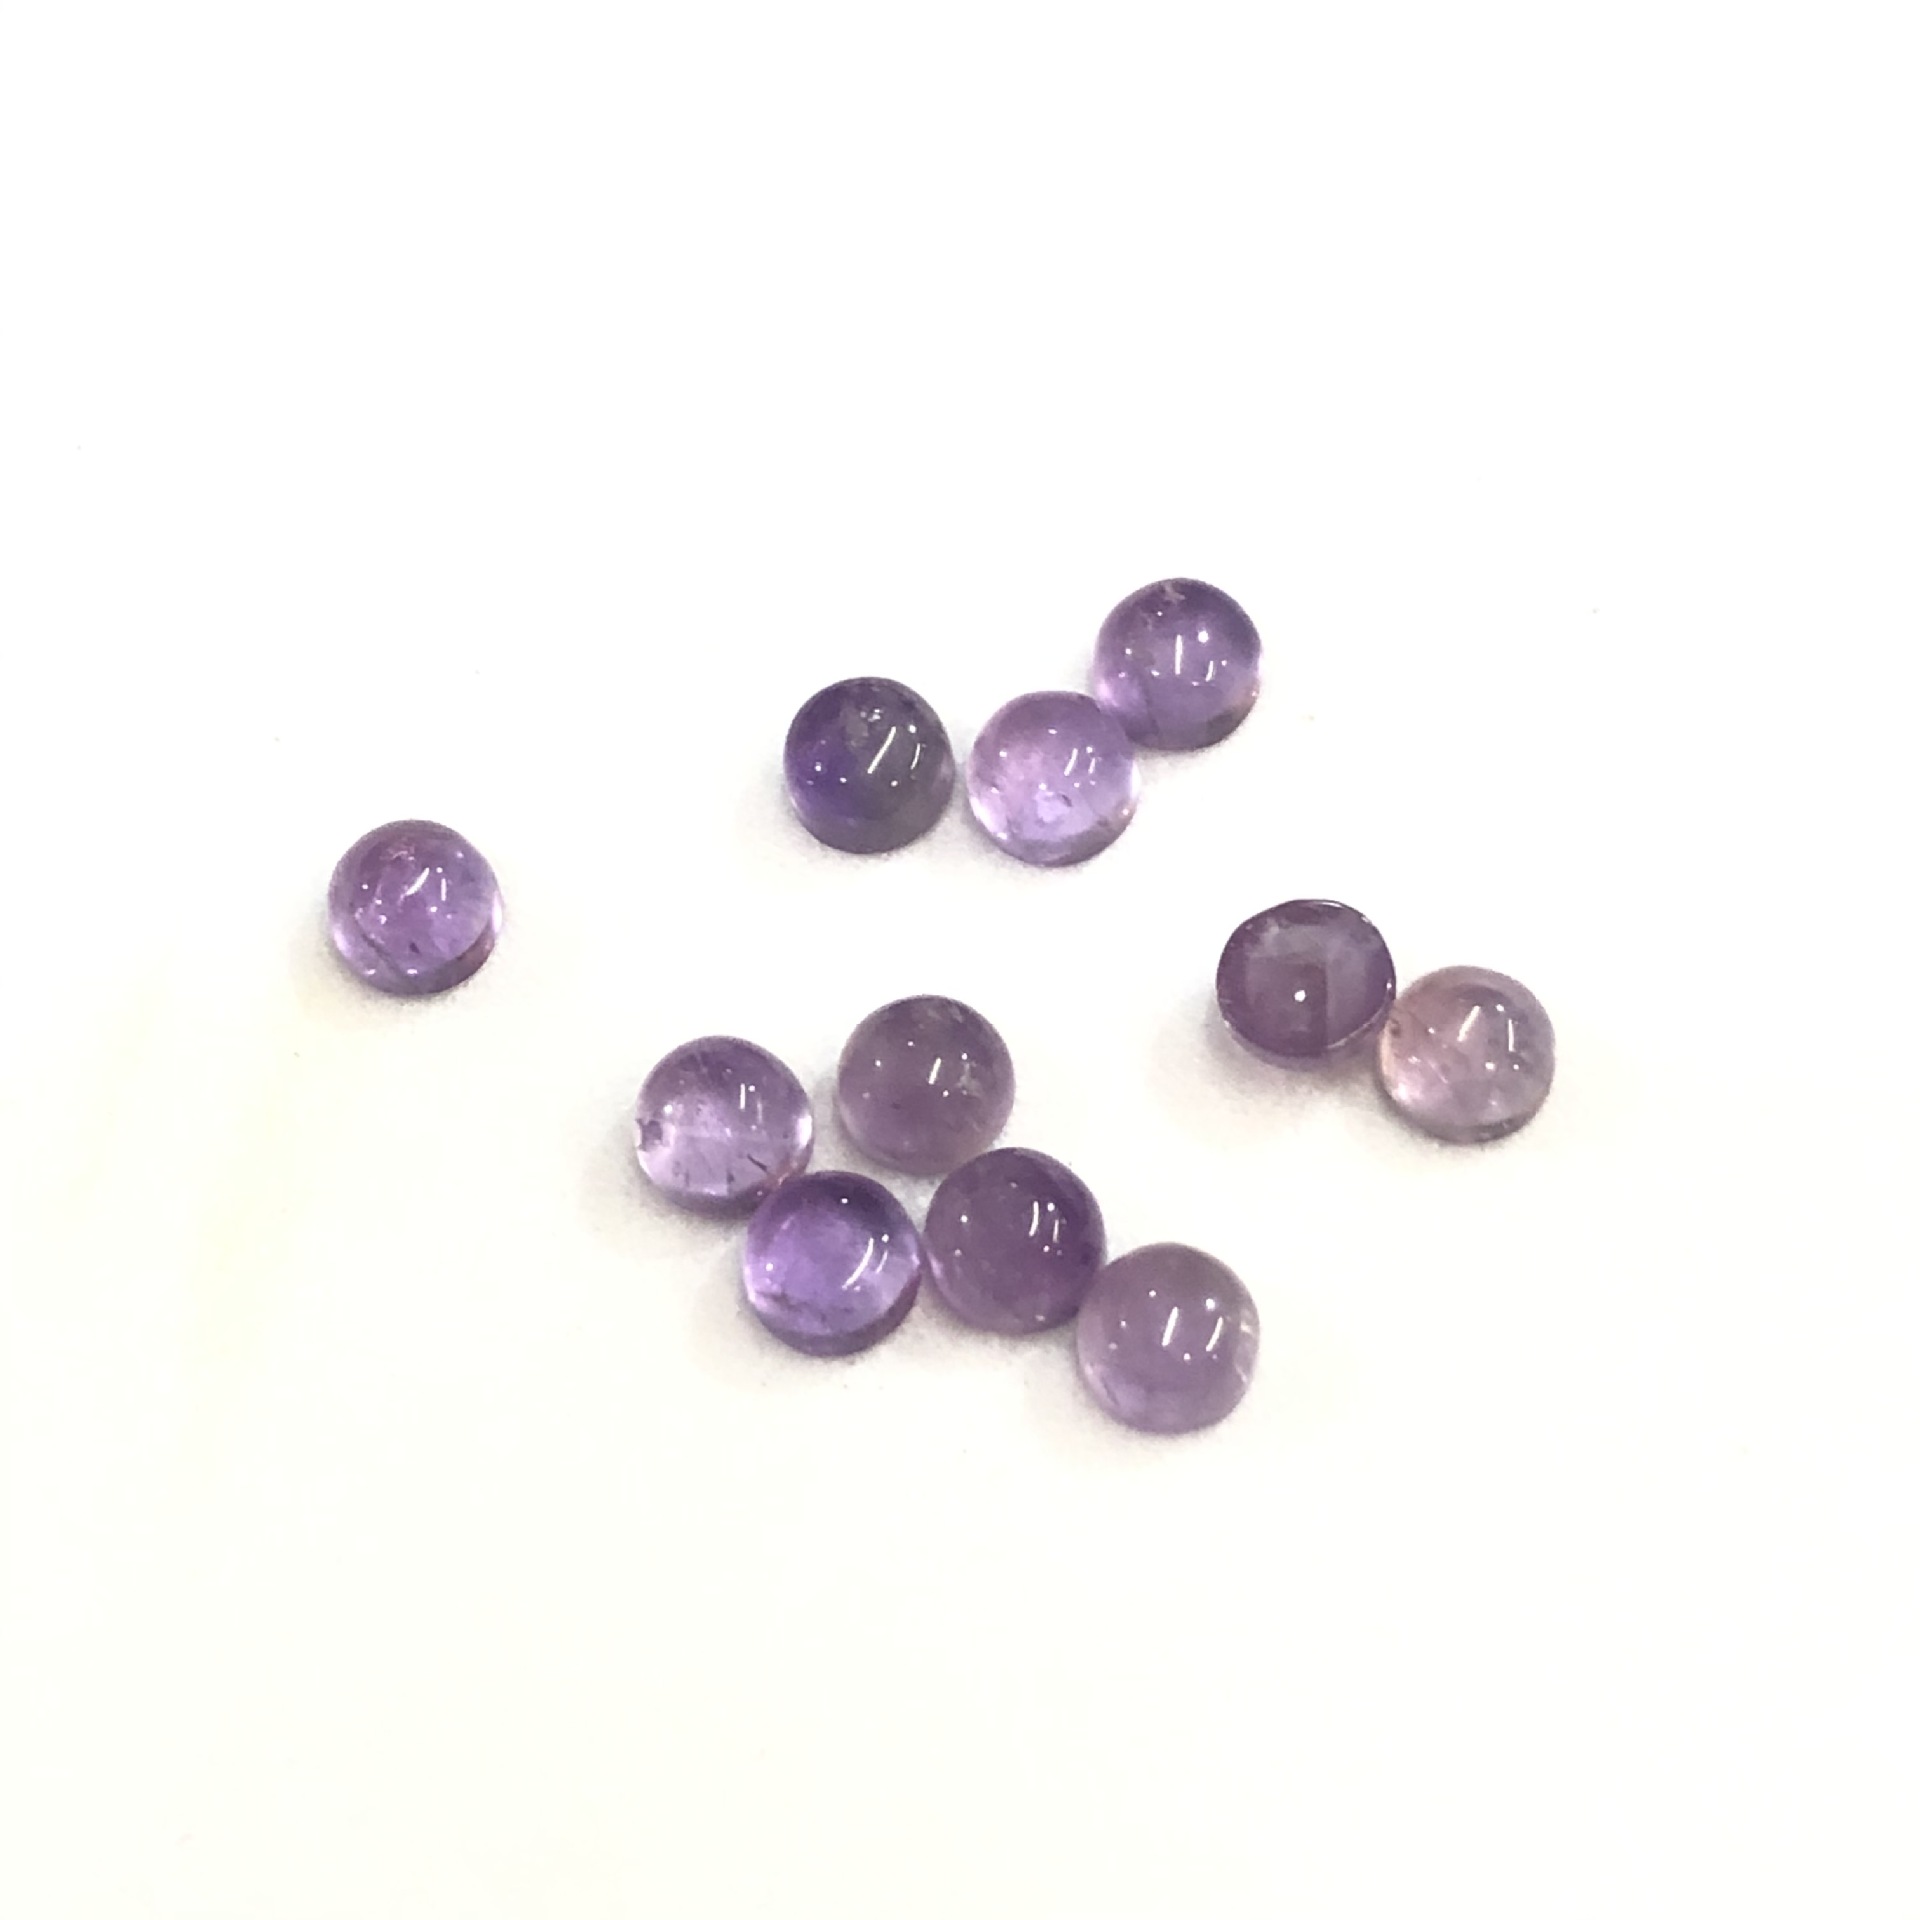 5 ágata púrpura